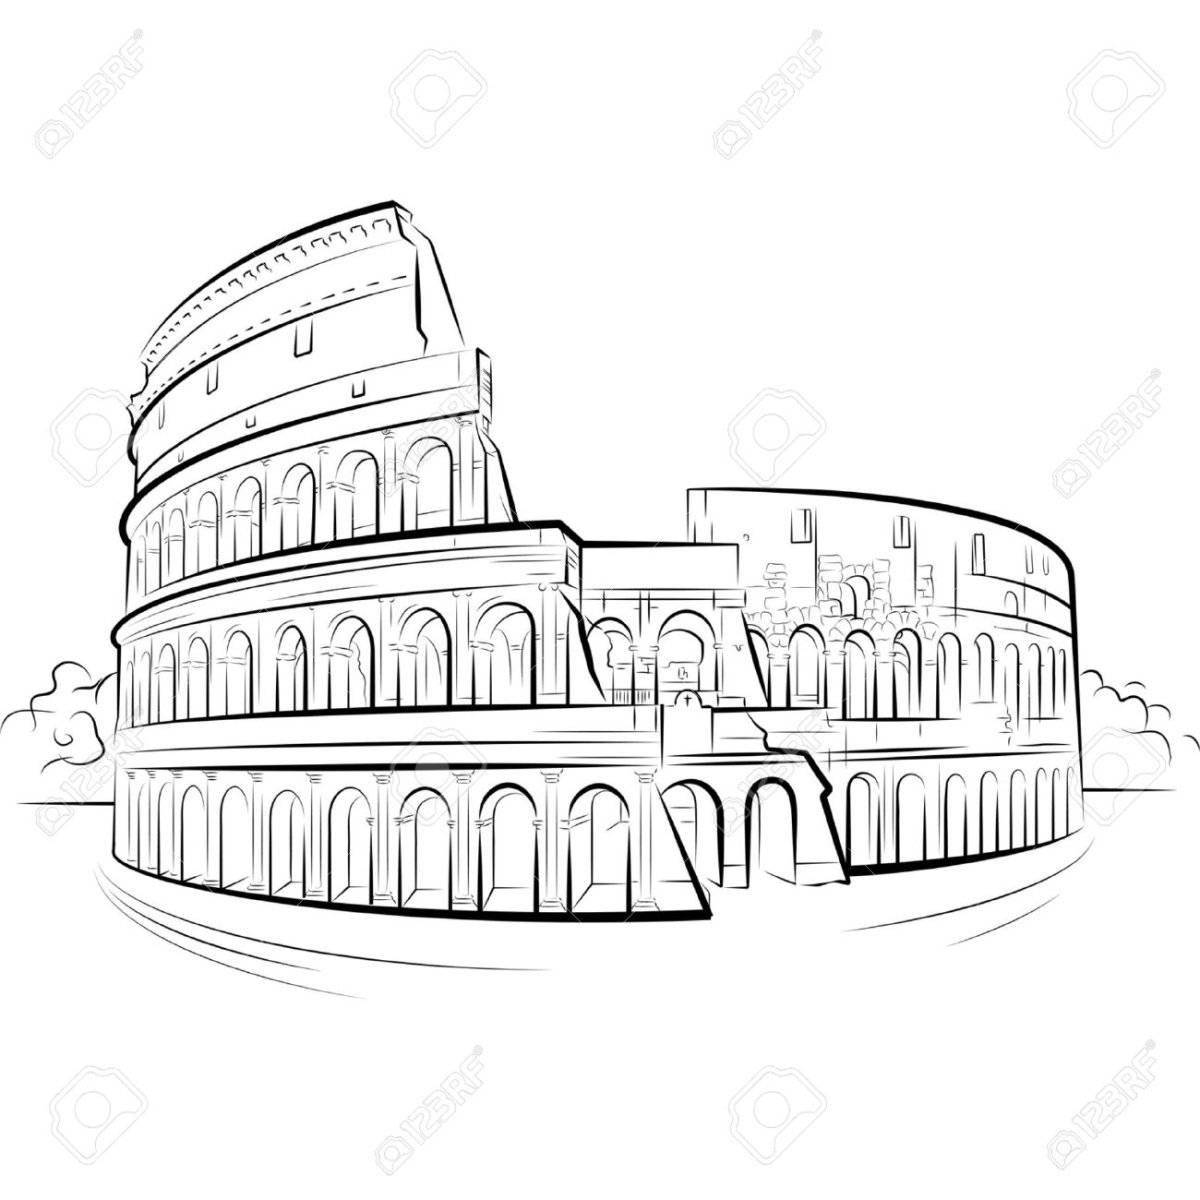 Impressive colosseum in rome coloring book